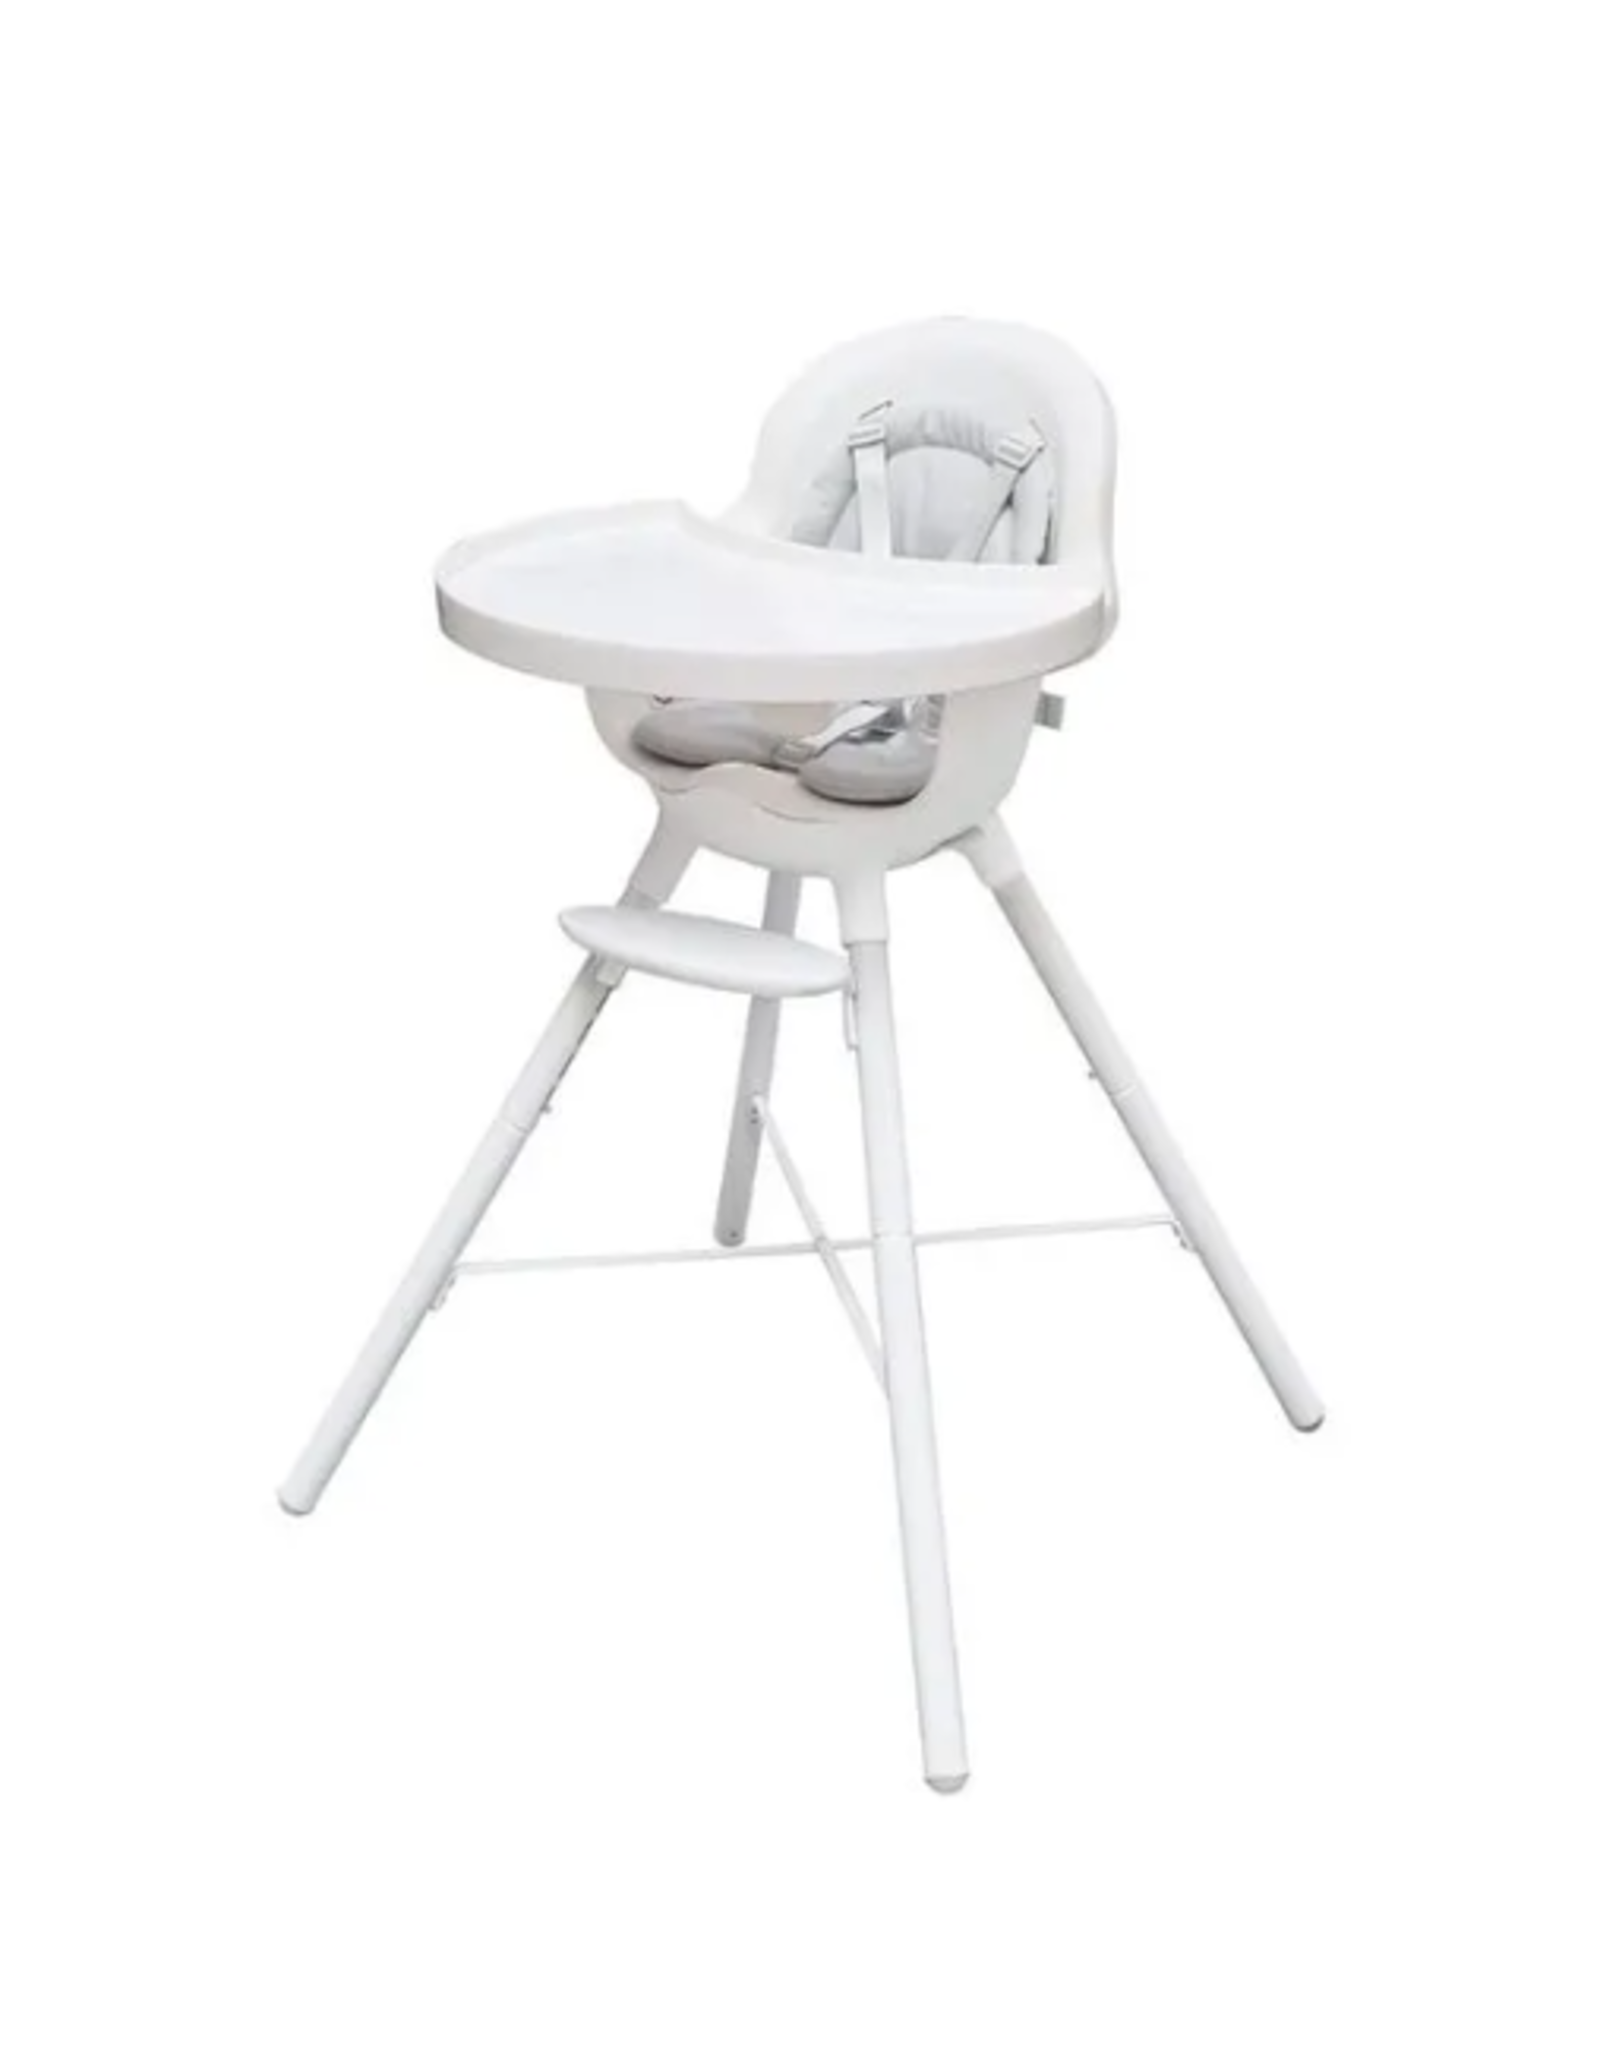 Boon GRUB 2-in-1 Convertible High Chair White